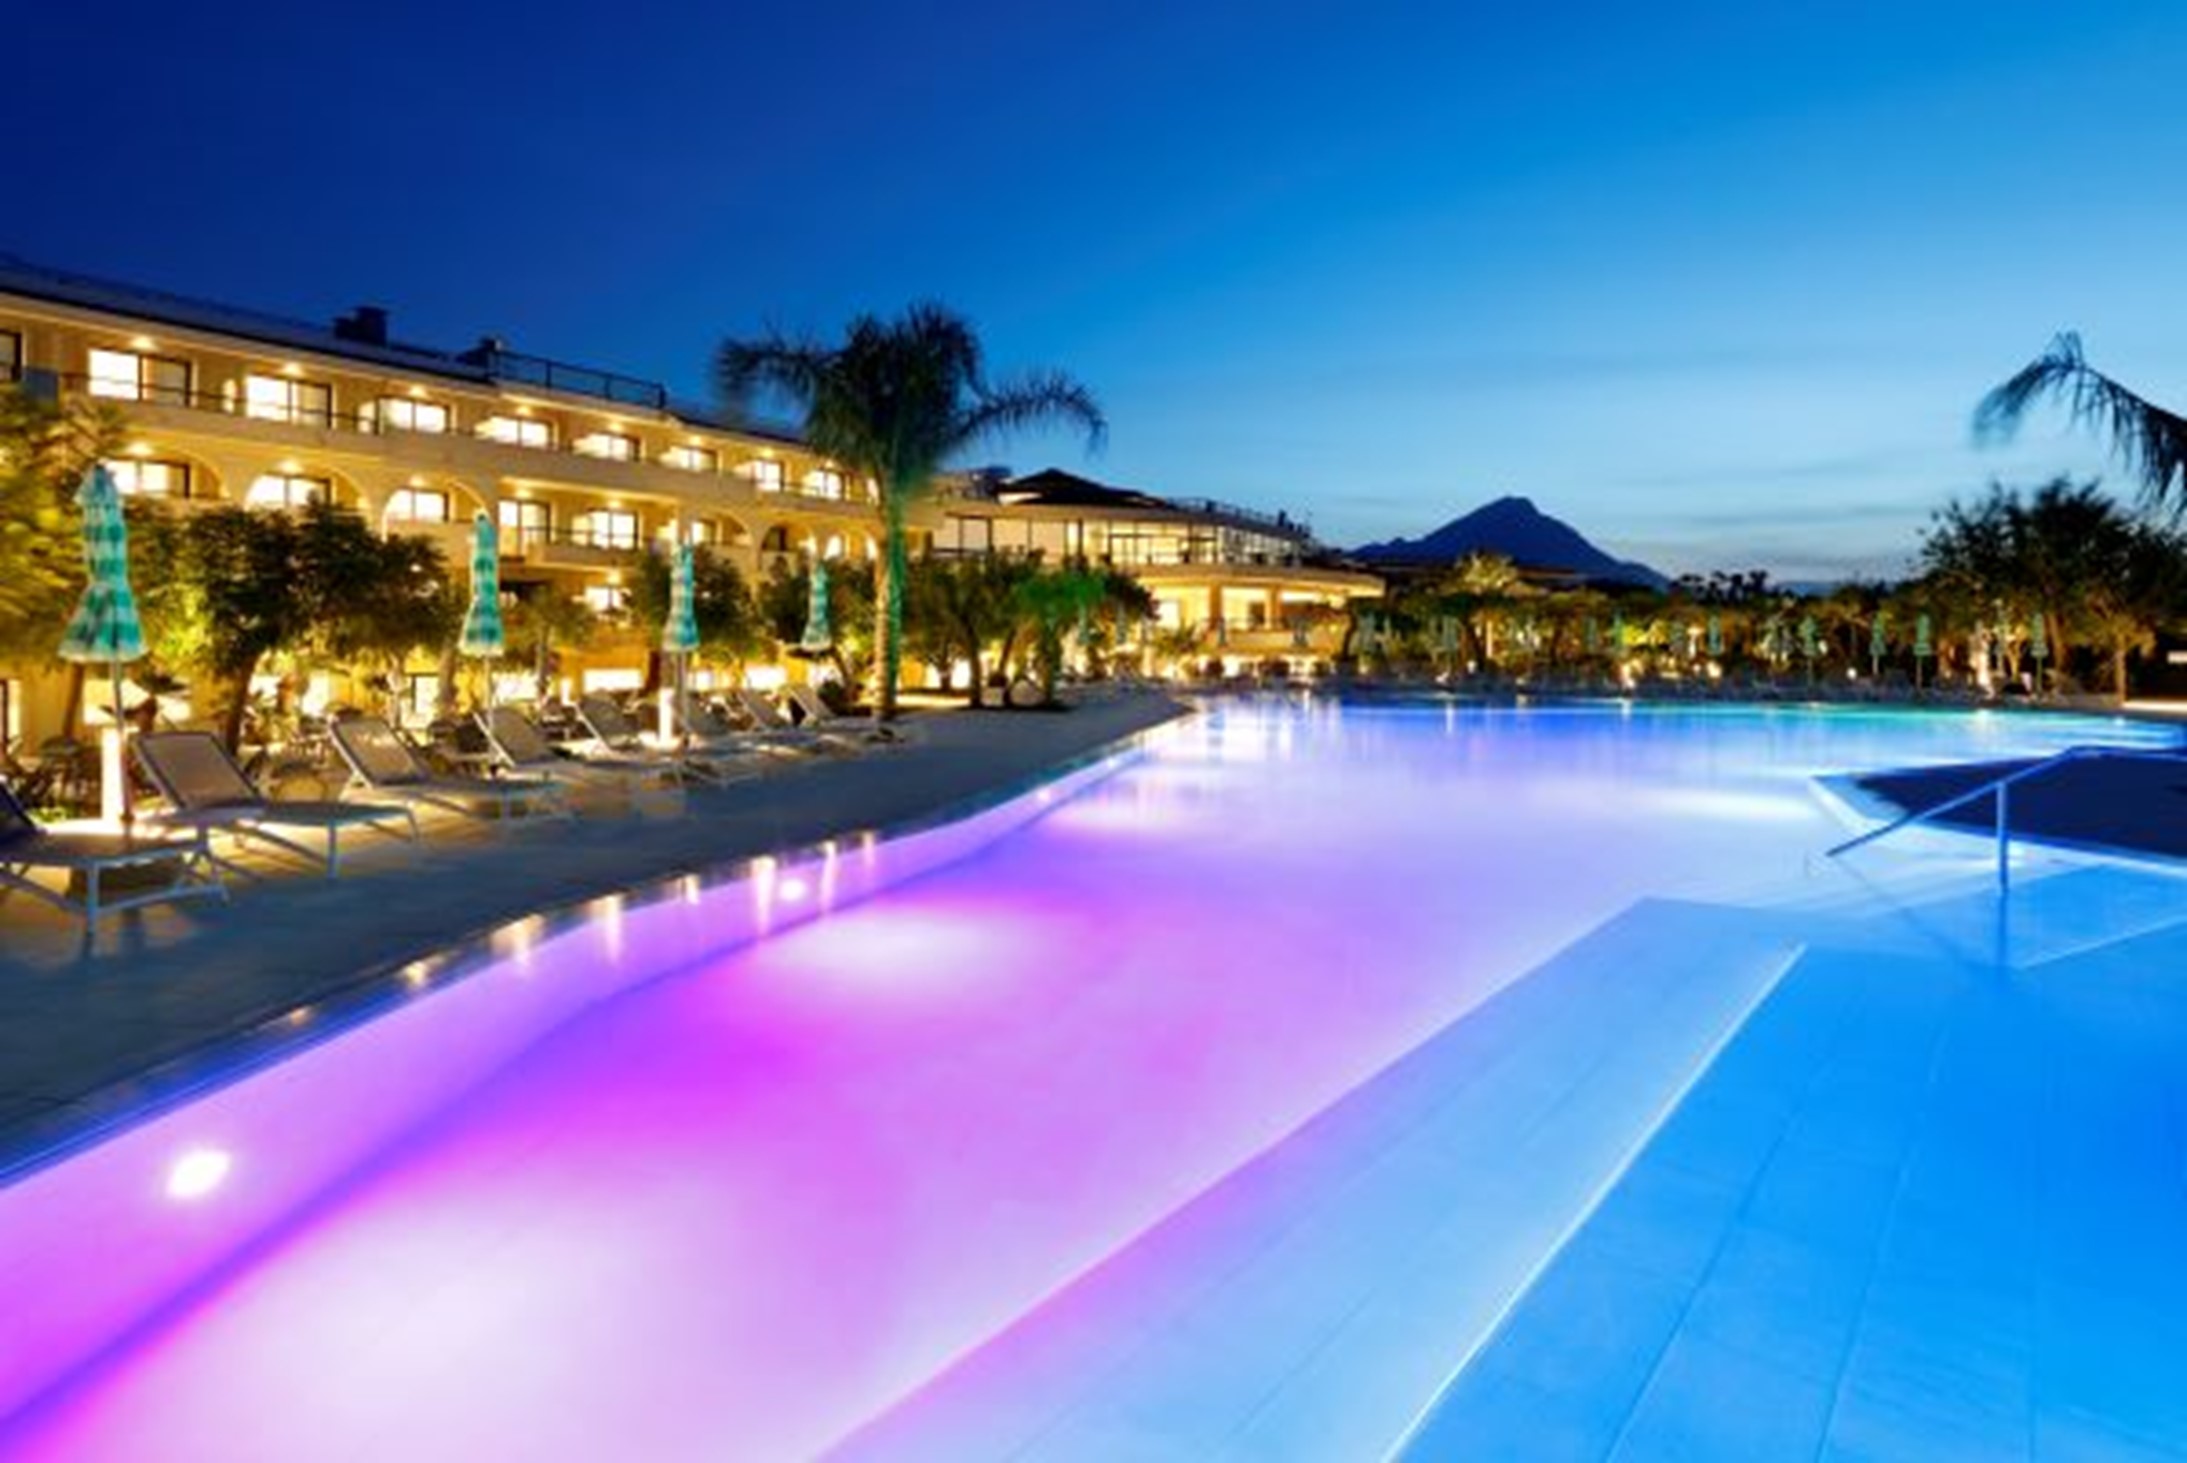 Neueröffnung im Mai 2021 von zwei Resorts der Palladium Hotel Group auf Sizilien